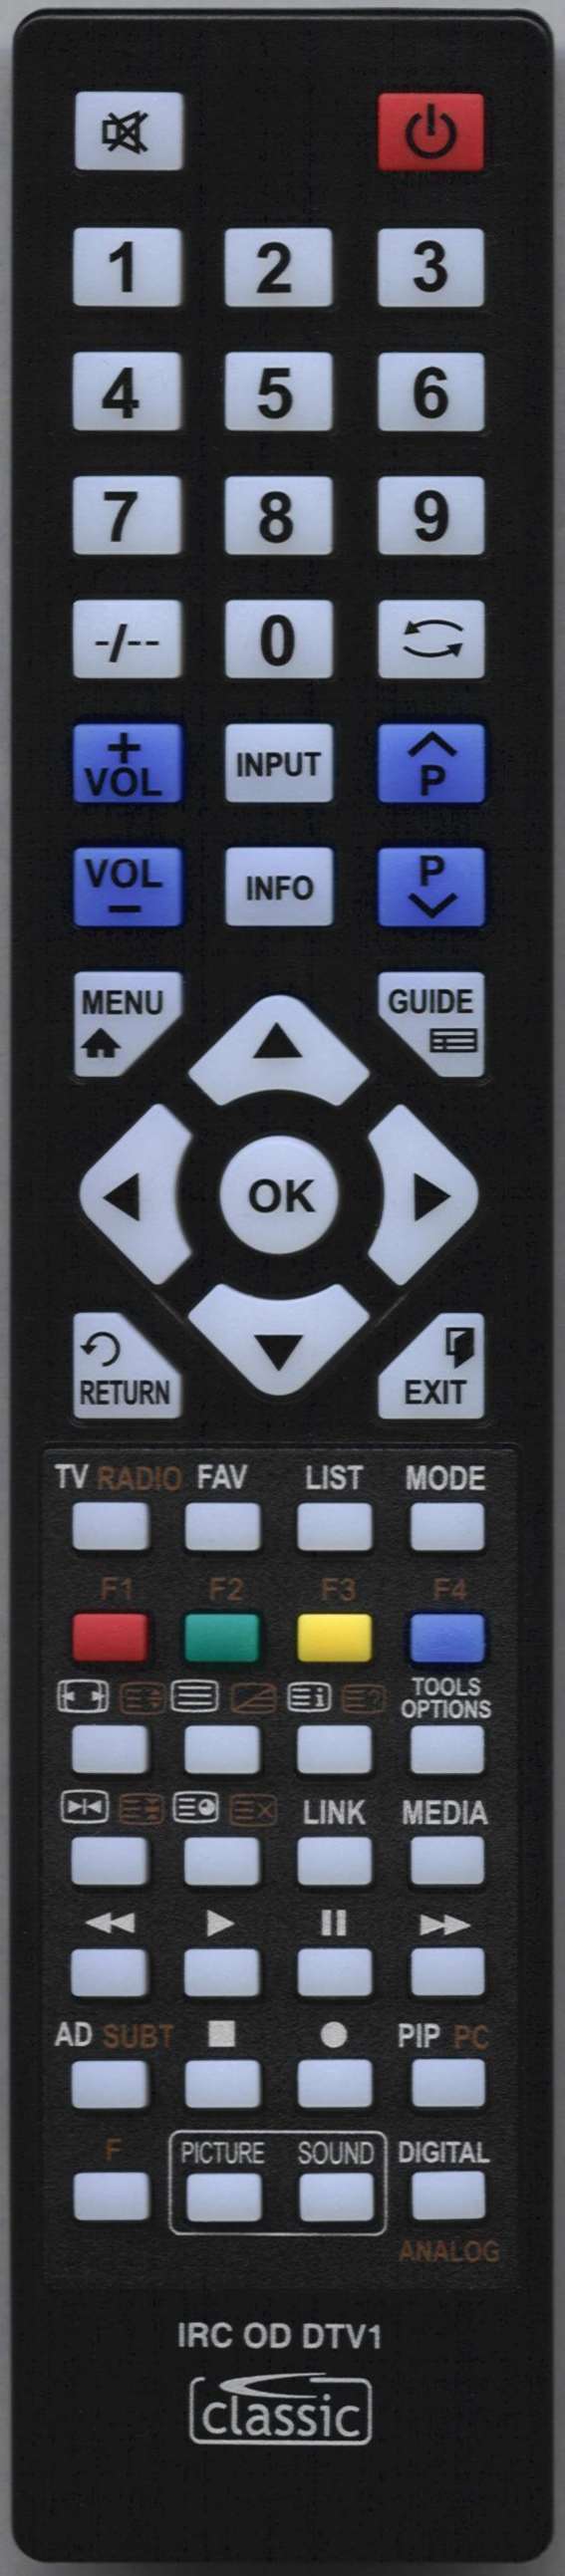 SONY KDL-40V4000 Remote Control Alternative